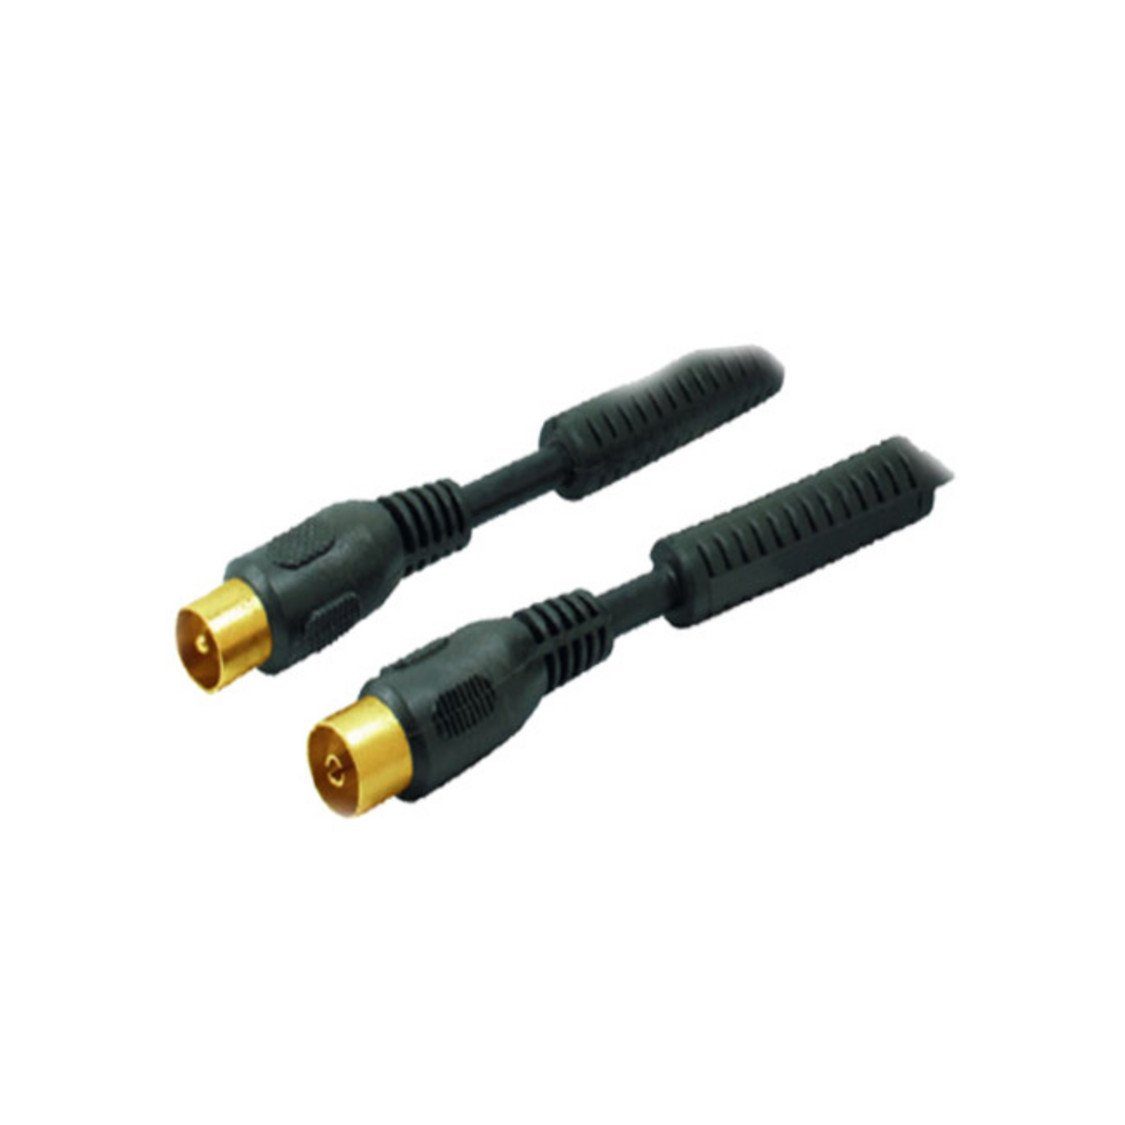 Schwarz vergoldet schw Koax-Kabelverbinder Antennenkabel Ferrit 5m >100dB S/CONN m. maximum connectivity®